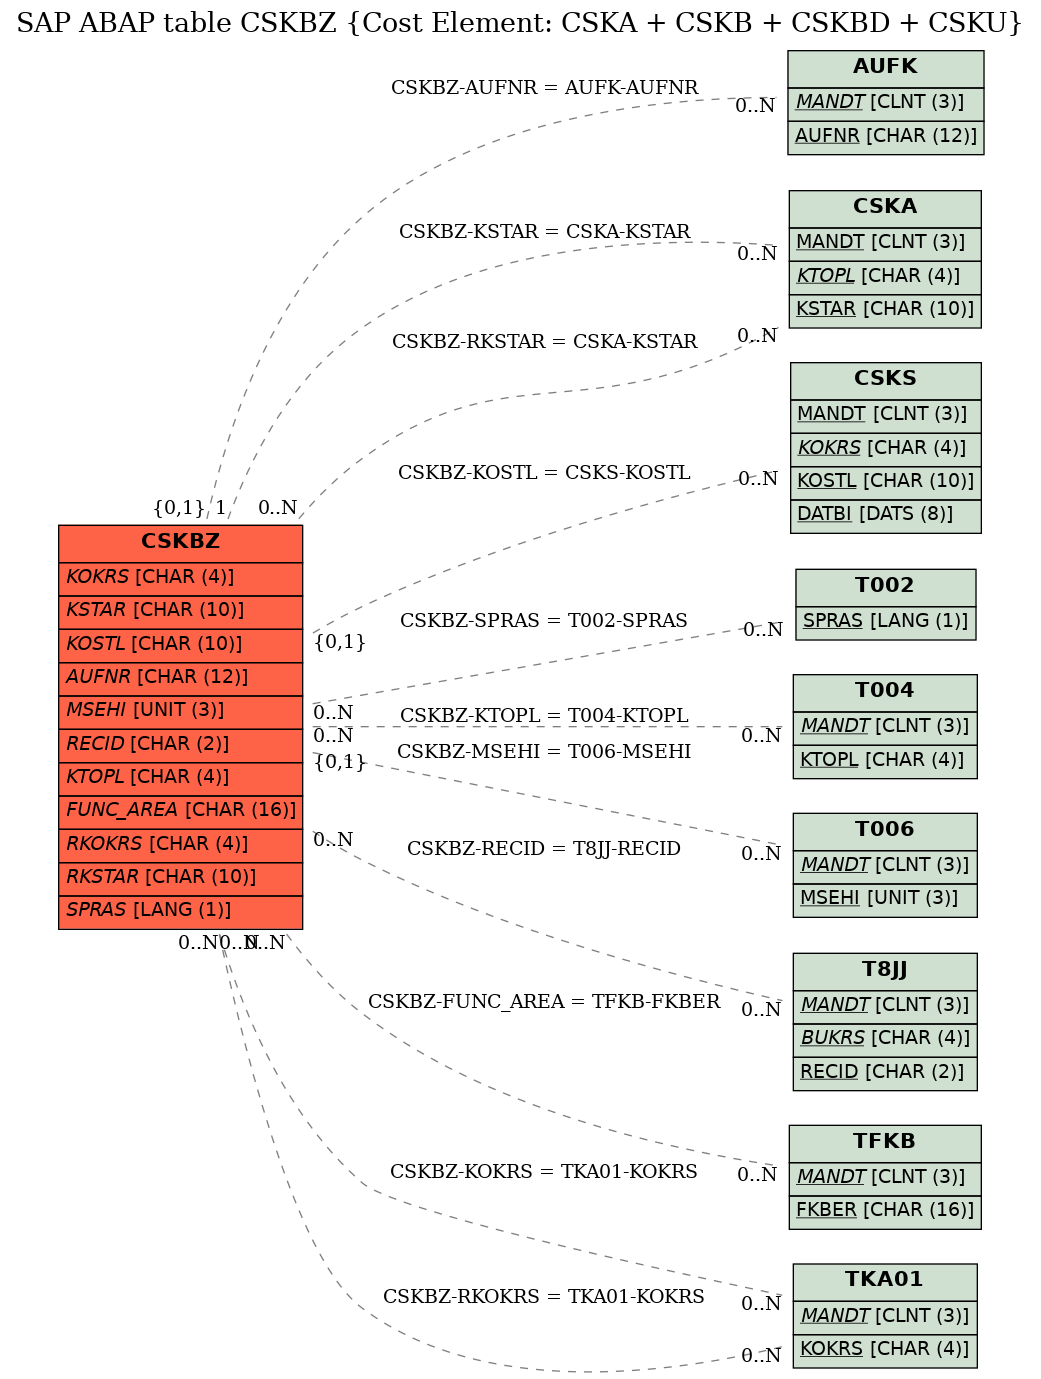 E-R Diagram for table CSKBZ (Cost Element: CSKA + CSKB + CSKBD + CSKU)